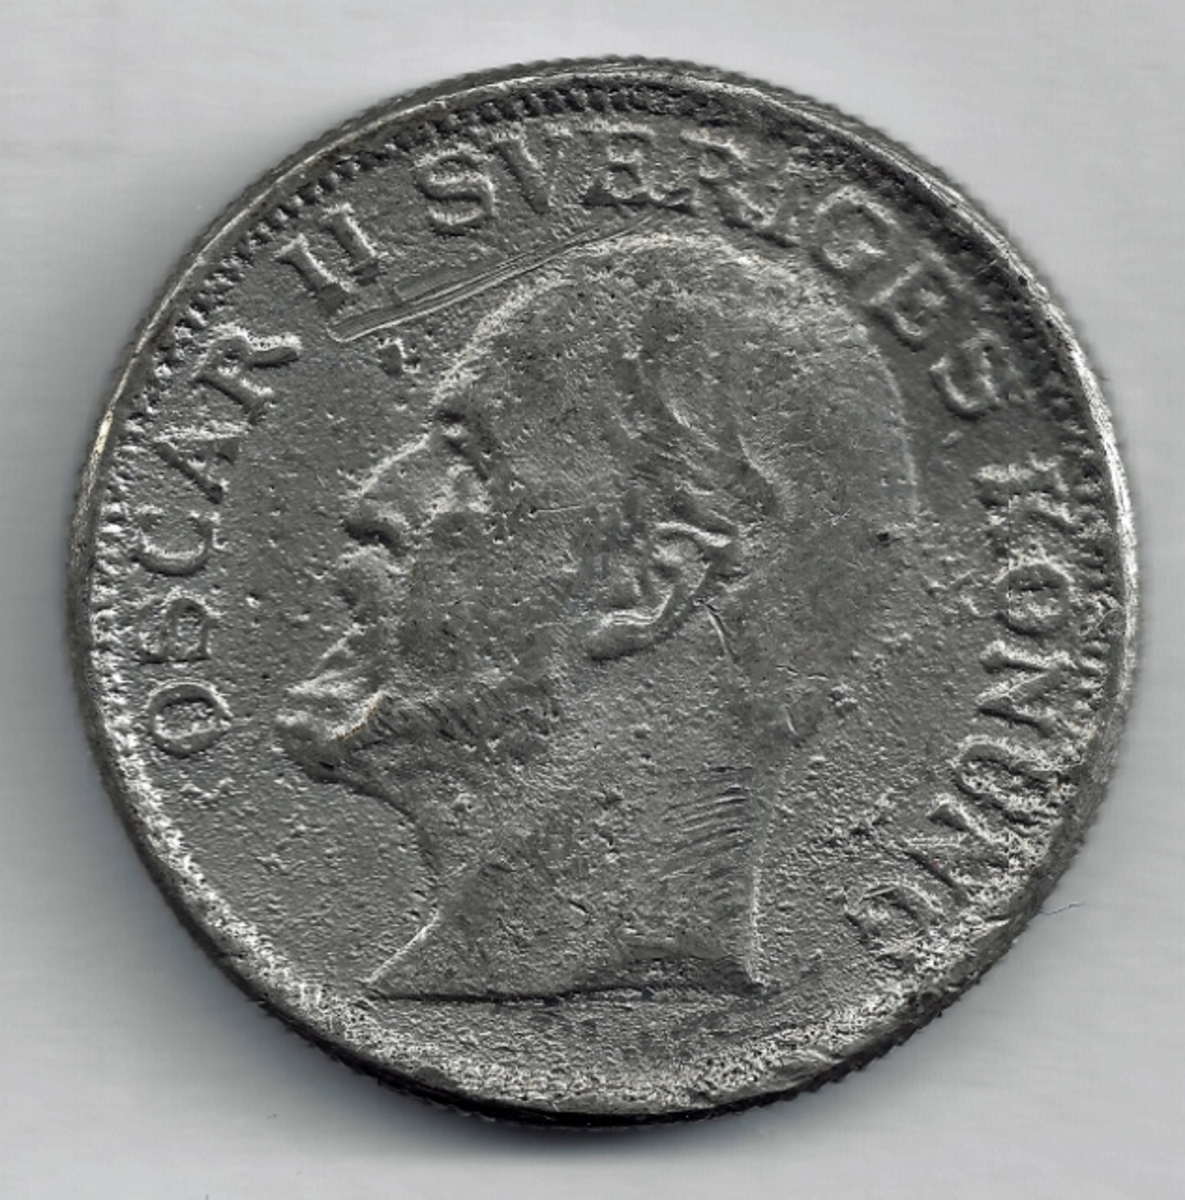 Falsk svensk 2-krone med preg 1907. Nærmere opplysninger savnes.